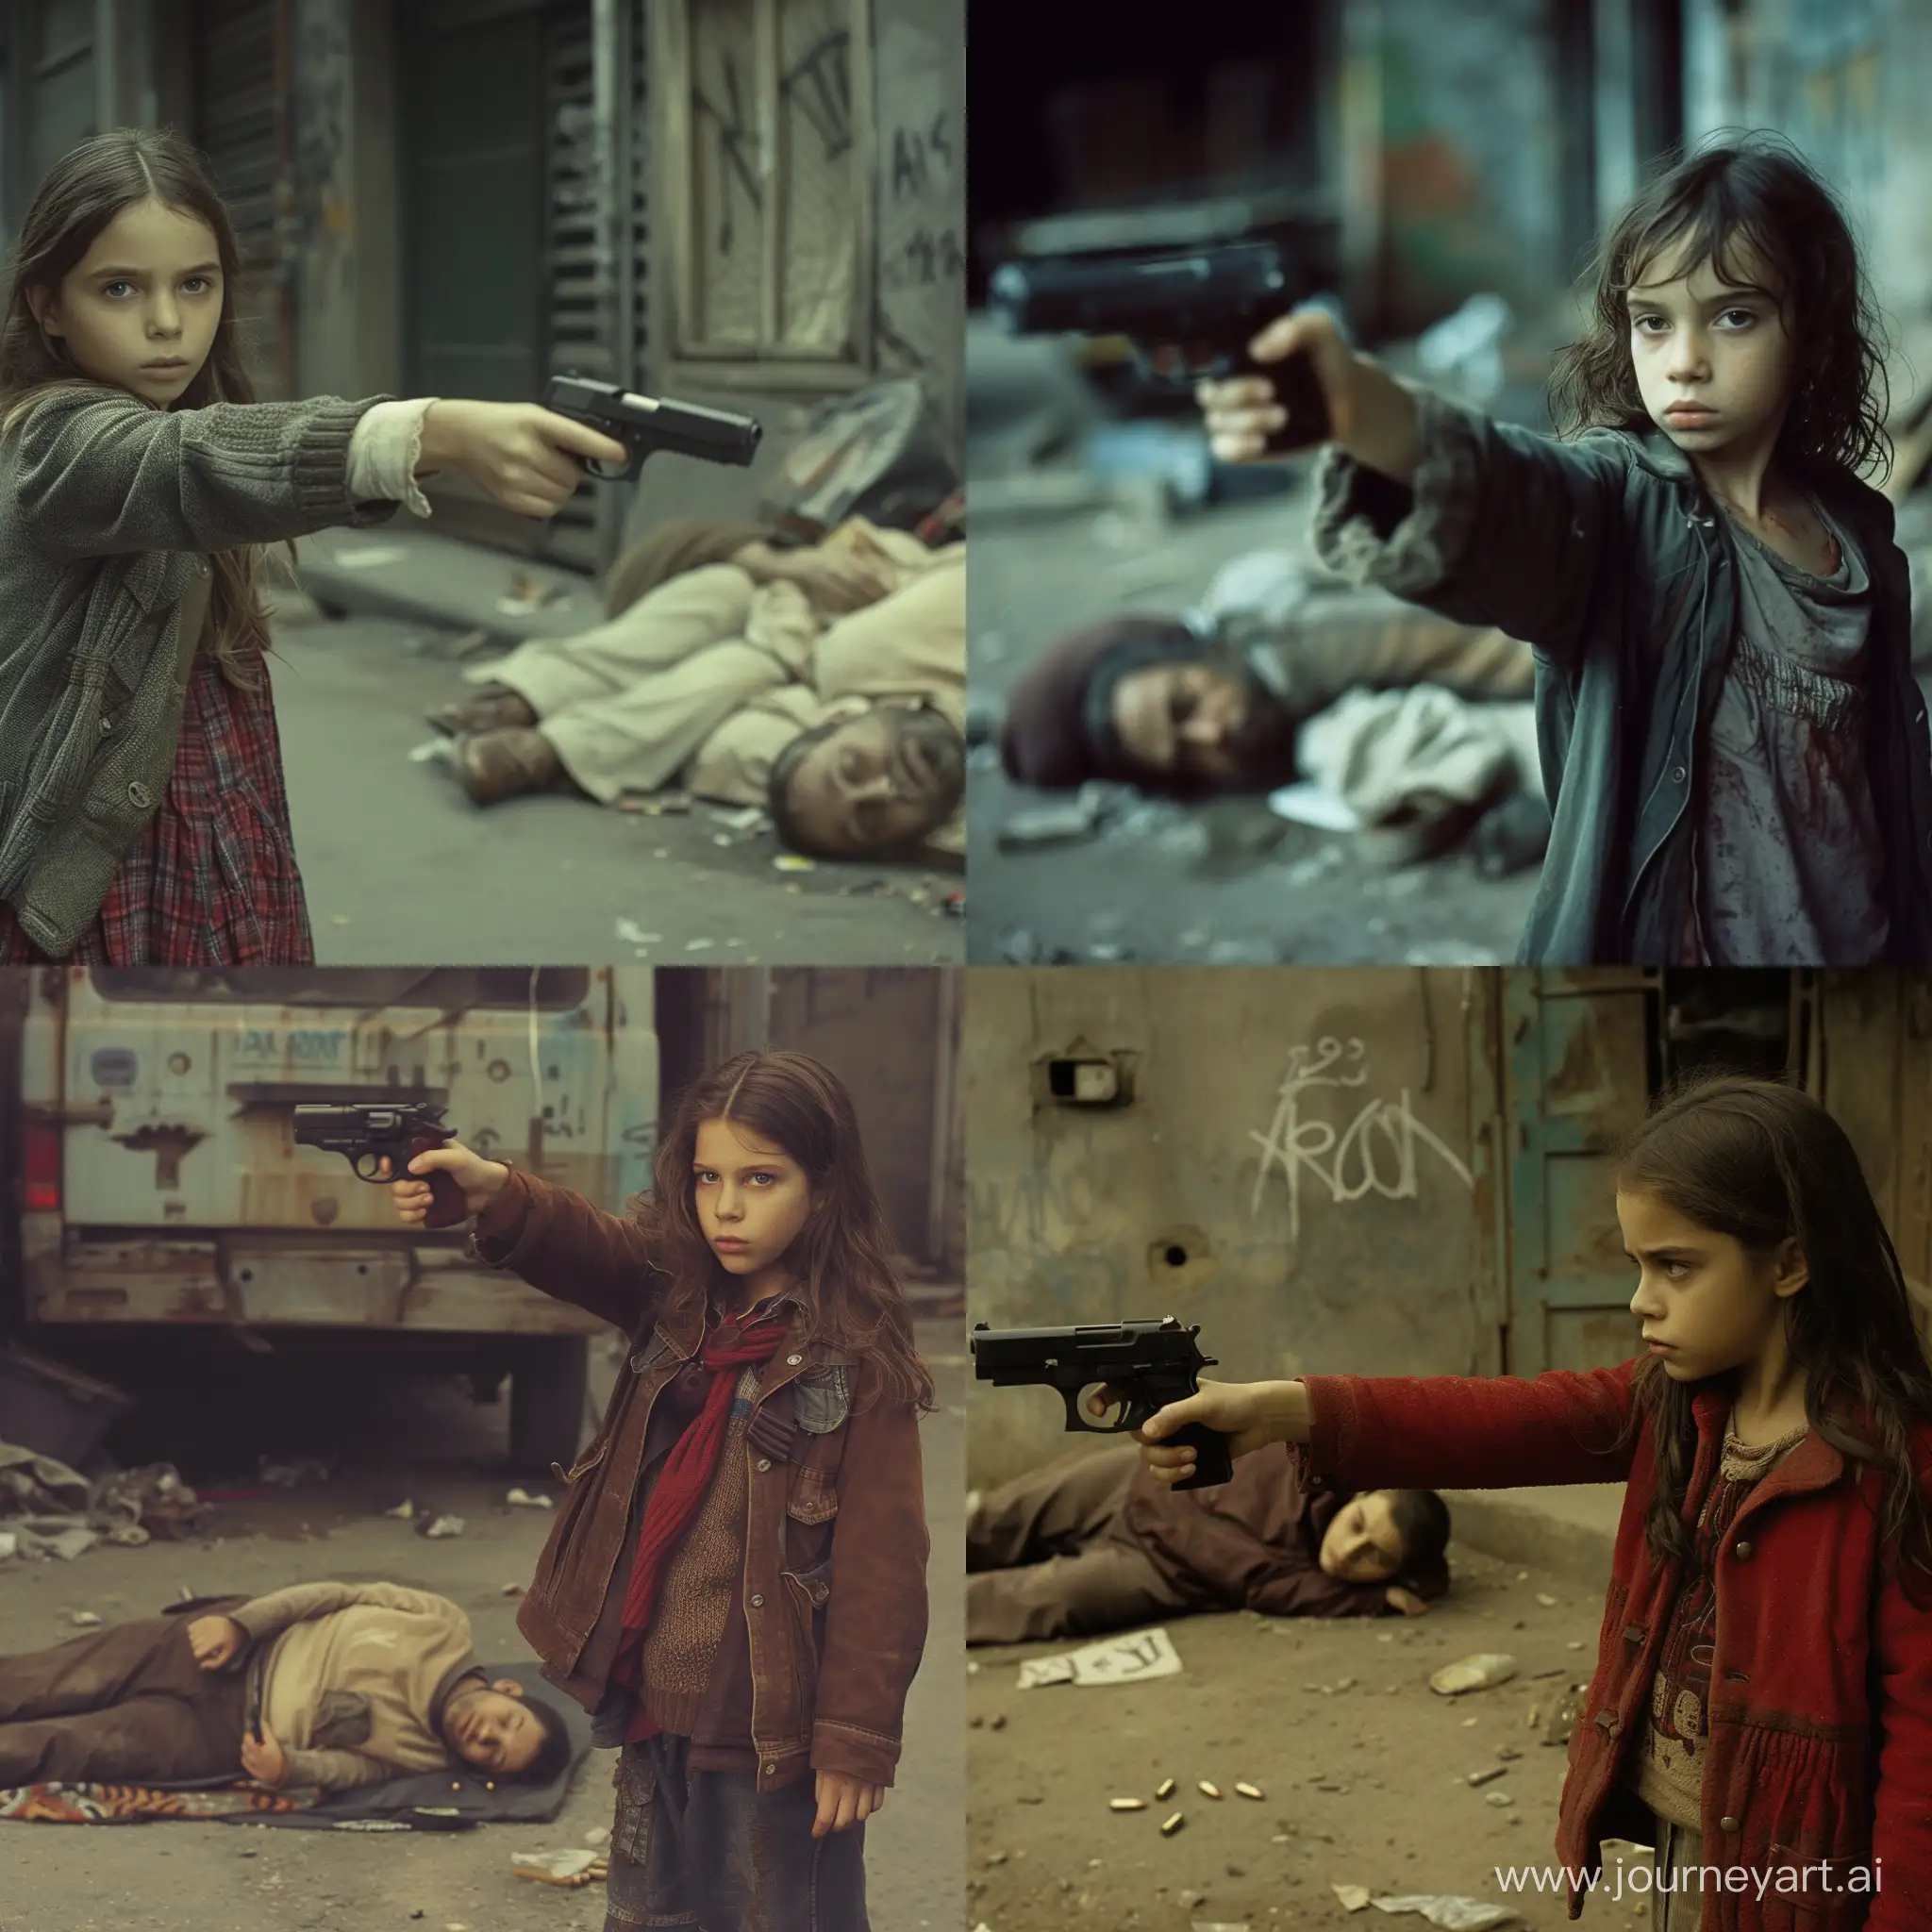 12-летняя девочка, она героиня фильма Леон, она маленькая Натали Портман, направляет пистолет на спящего бомжа. бедный квартал.
